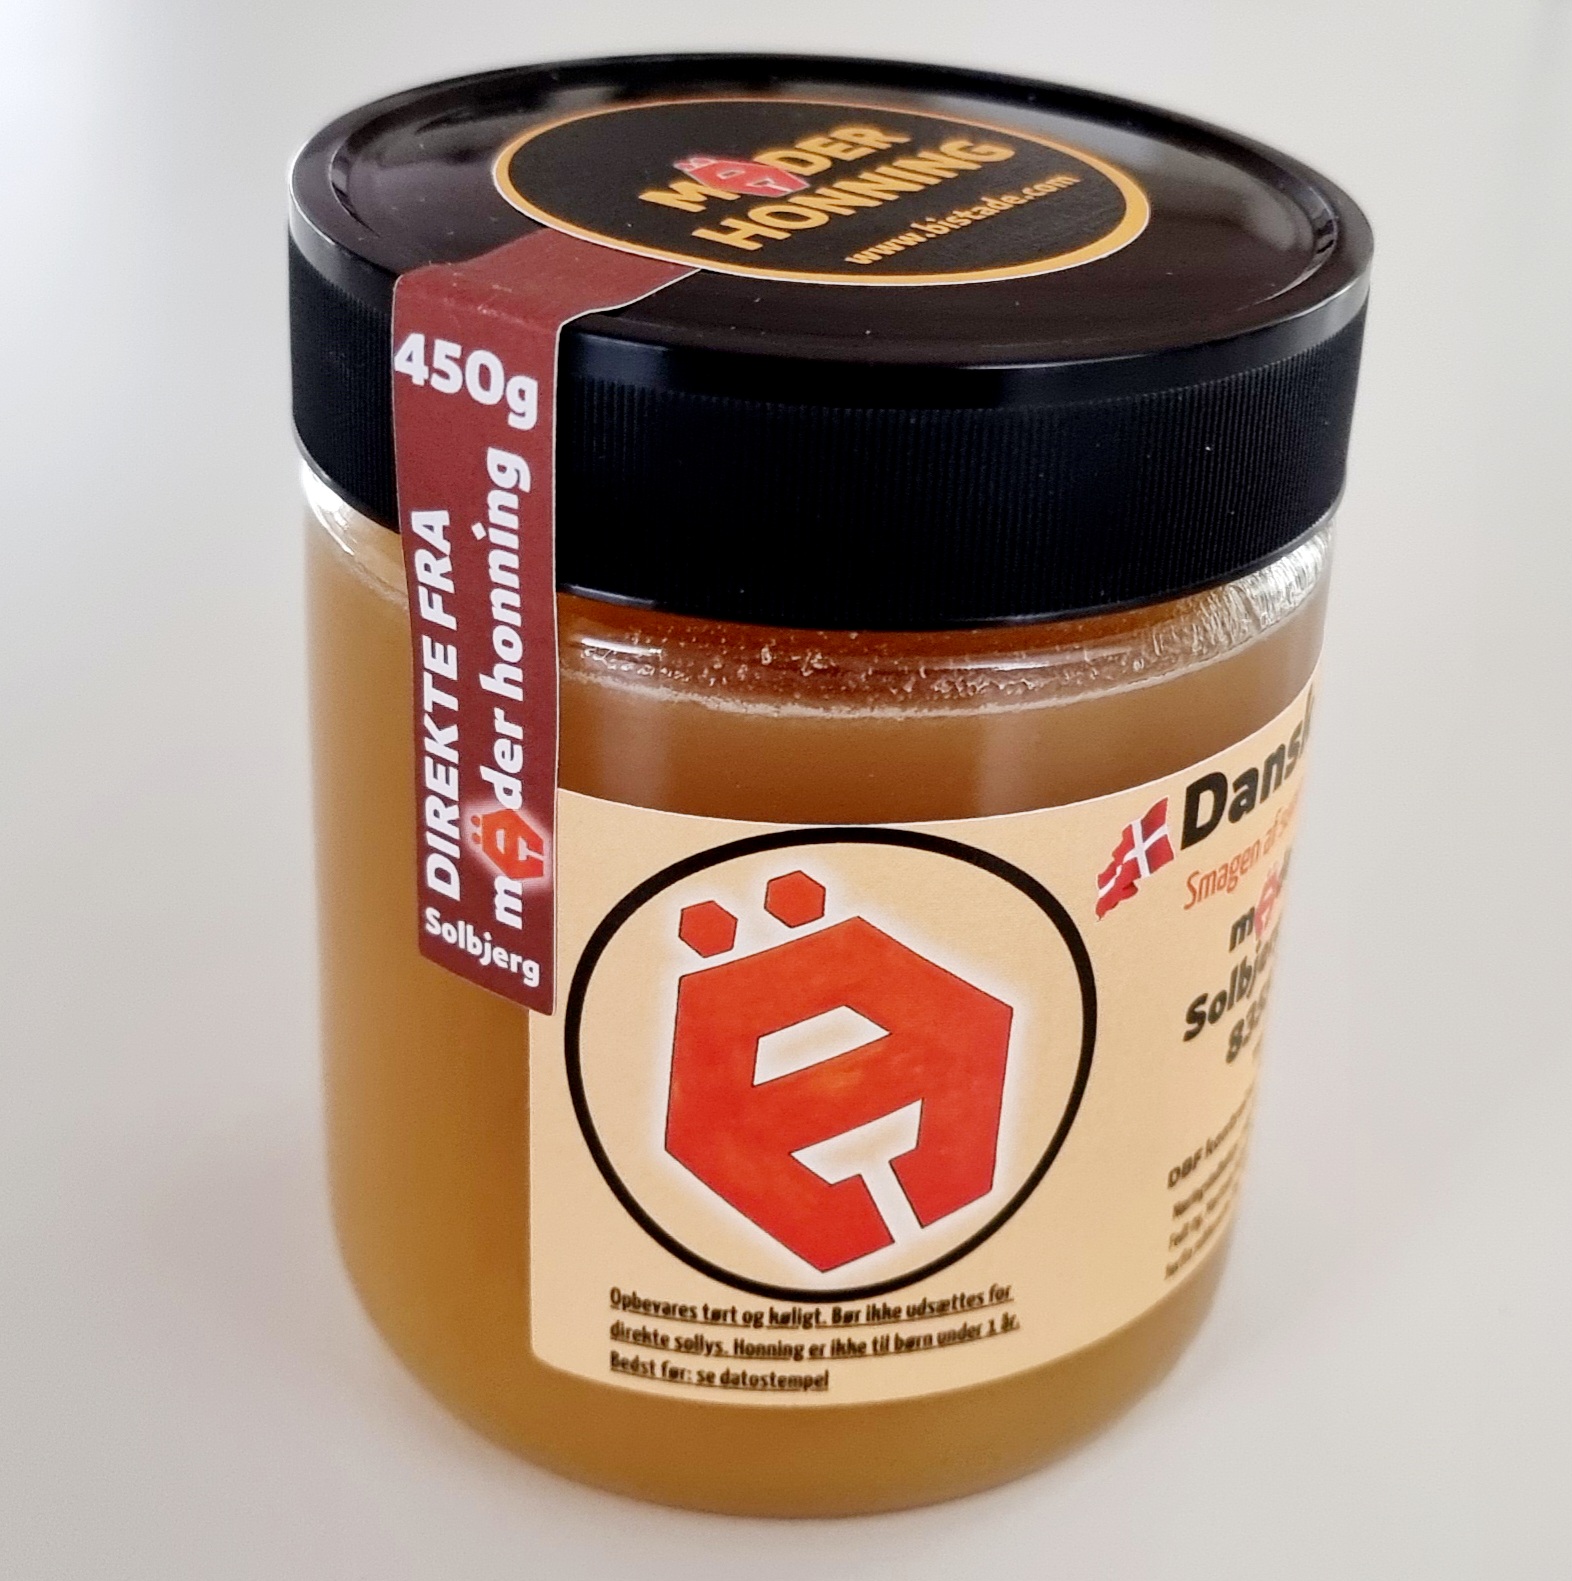 Dansk honning avlet i egen bigård. Mäder Honning Dansk Sensommerhonning 2023 Solbjerg 450g